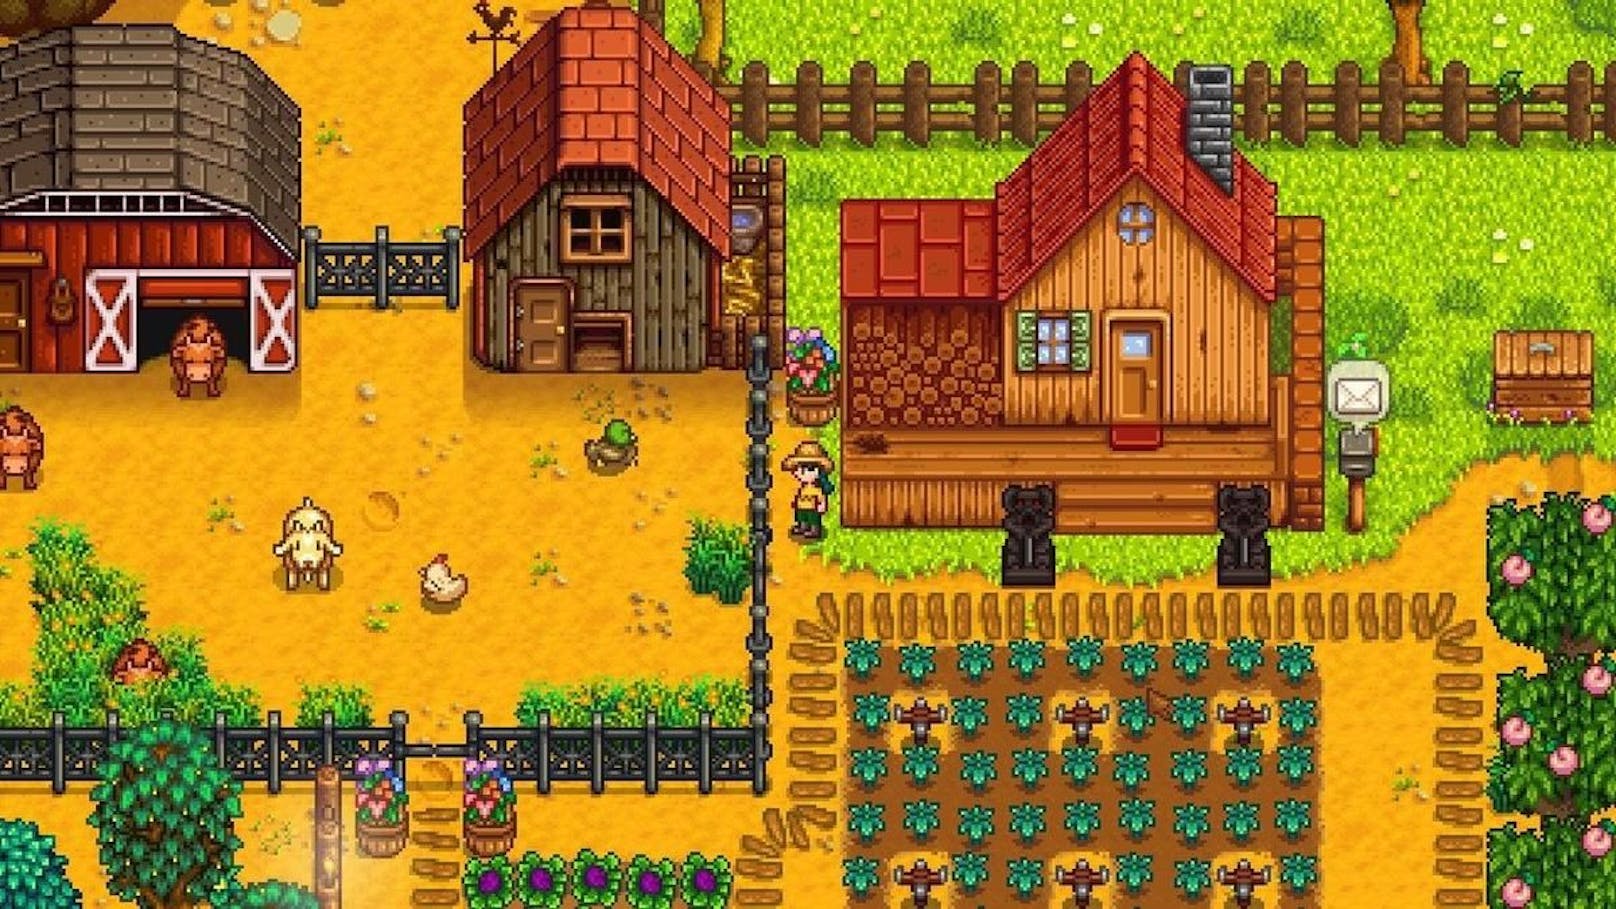 "Stardew Valley" ist ein Farm-Simulator und Rollenspiel, das mit der 2D-Grafik an die Spiele aus den 90ern erinnert.